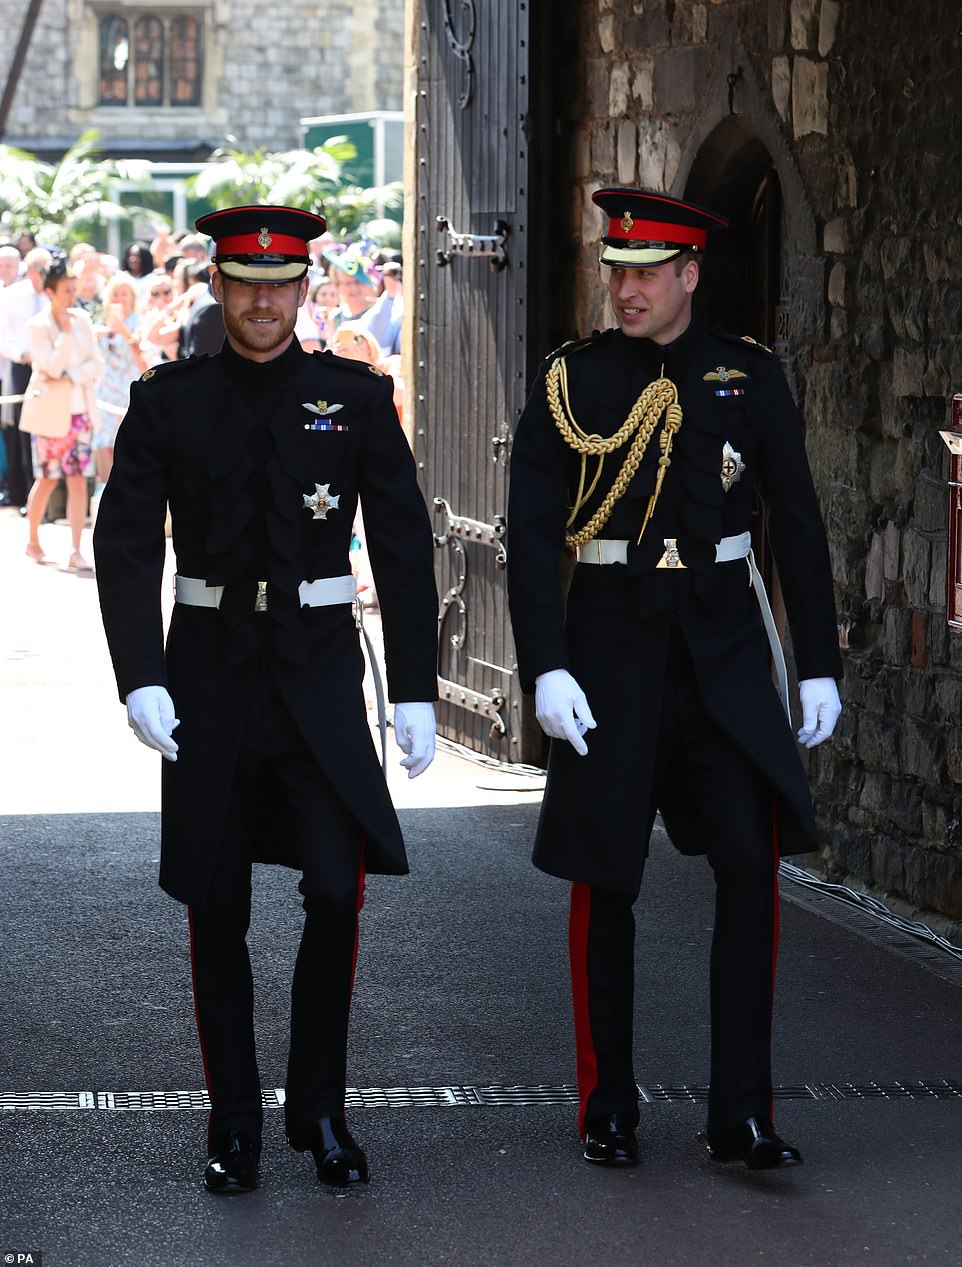 Πρίγκιπας Φίλιππος : Χαμός με τις στολές για την κηδεία του - Η οδηγία της βασίλισσας Ελισάβετ